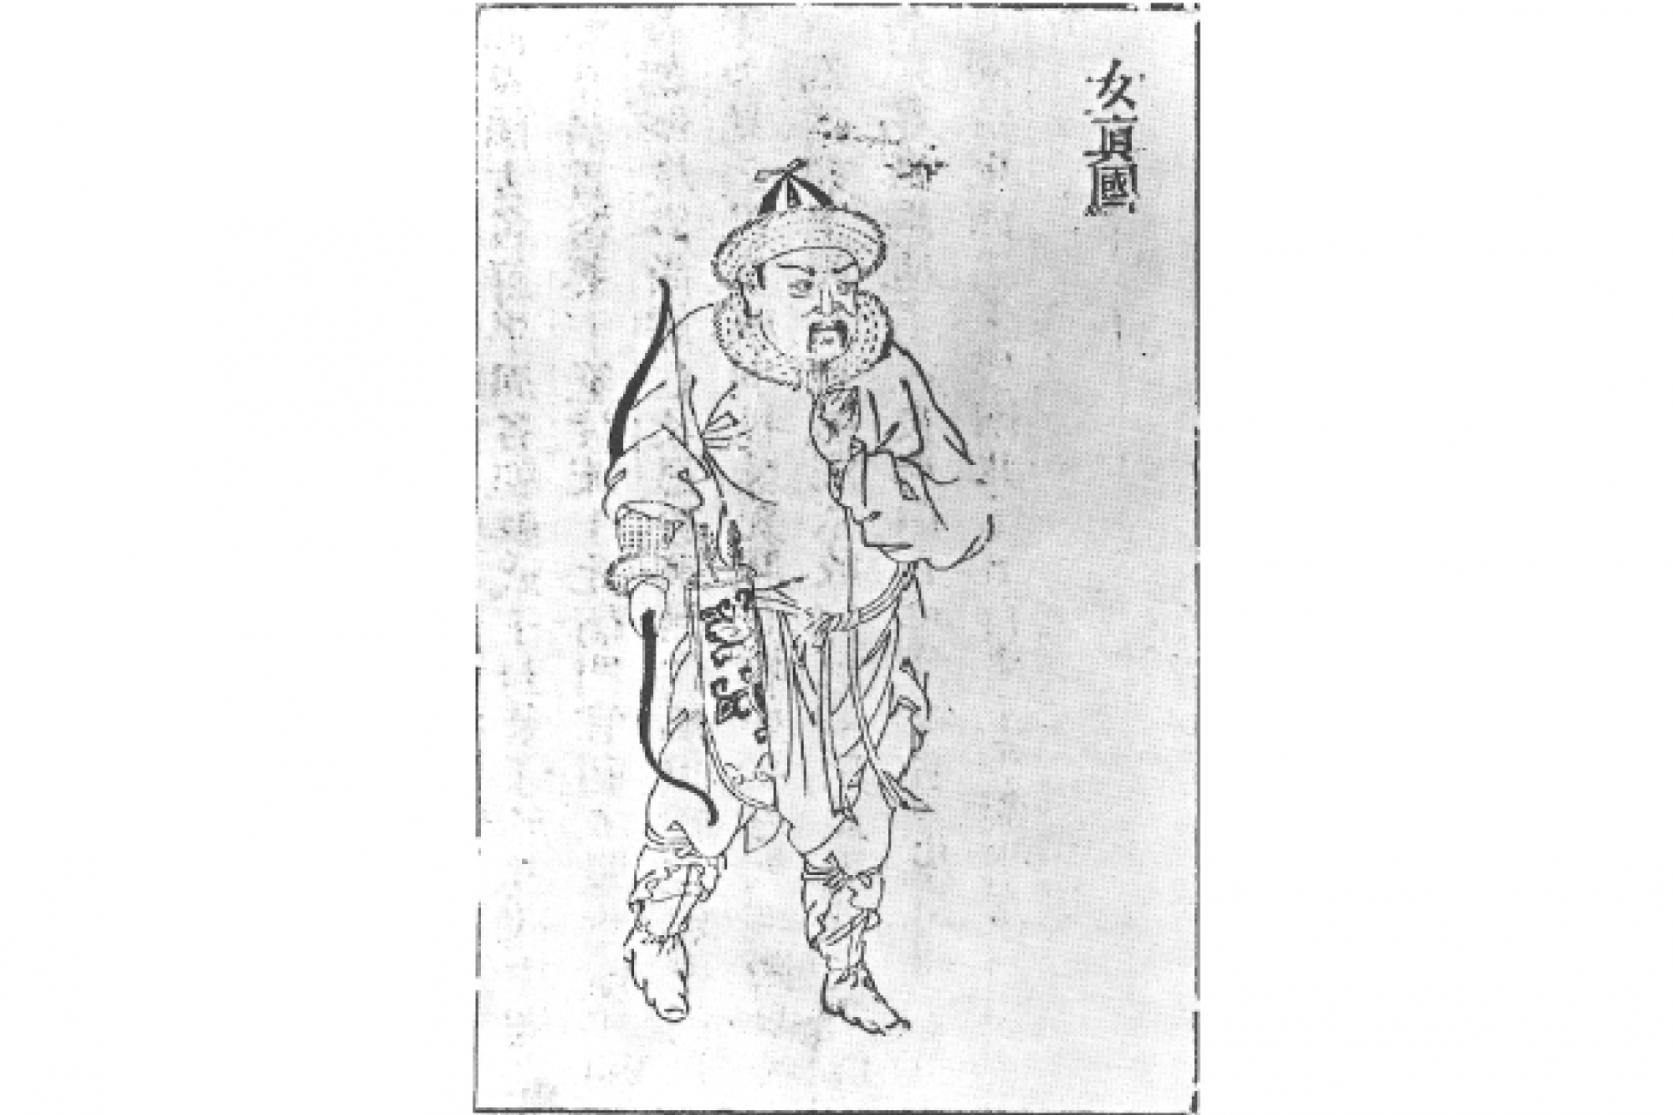 女真族を描いた明朝後期 (1368 ～ 1644 年) の木版画